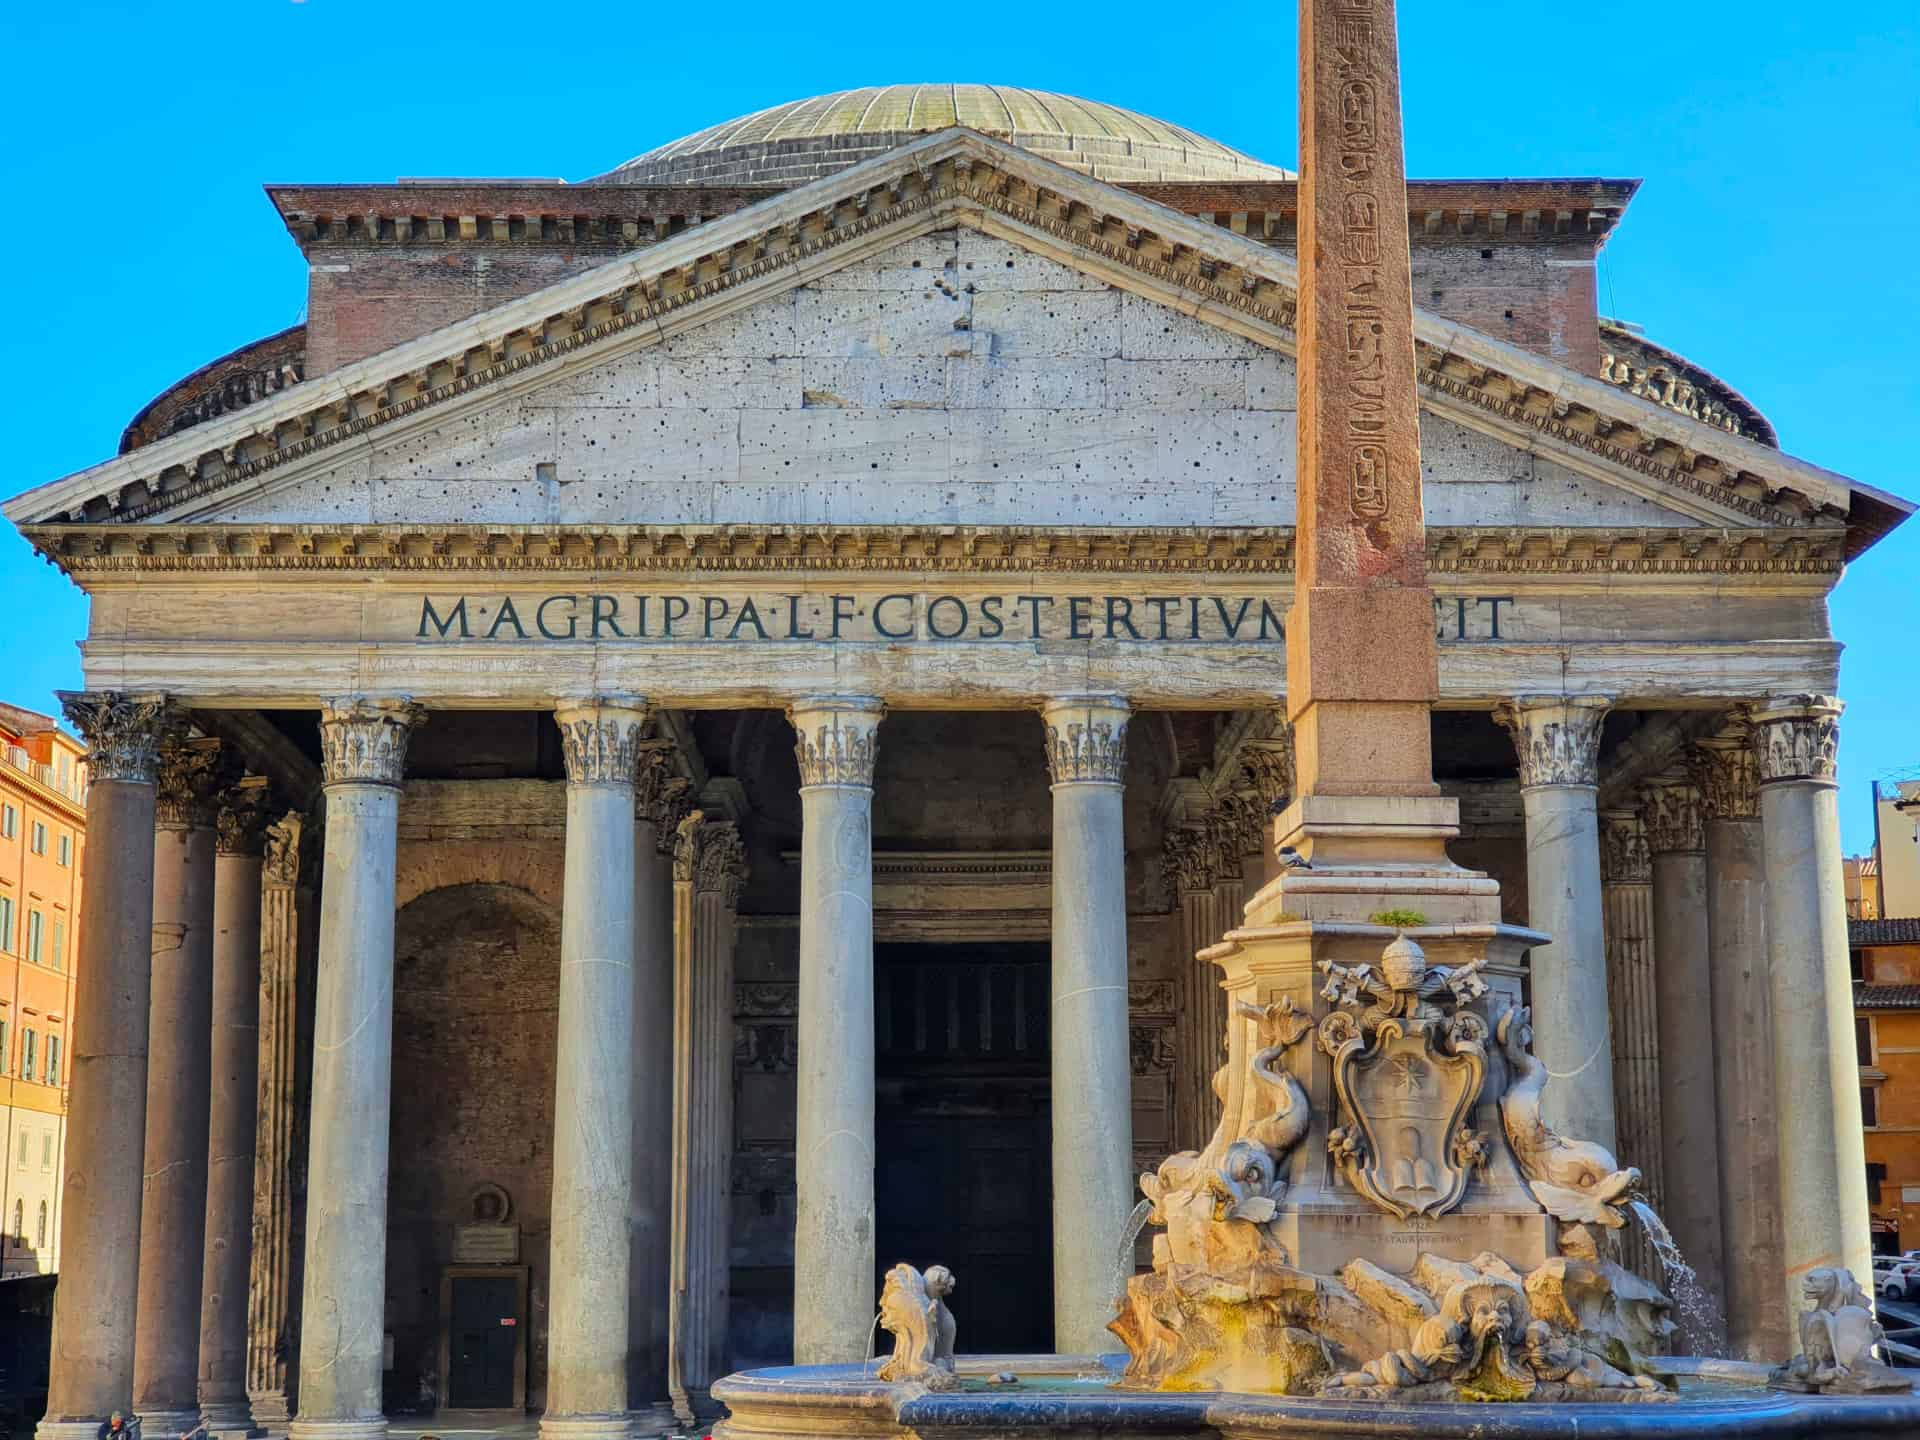 Tour zu den berühmten Brunnen und Plätzen in Rom – Treasures of Rome 5